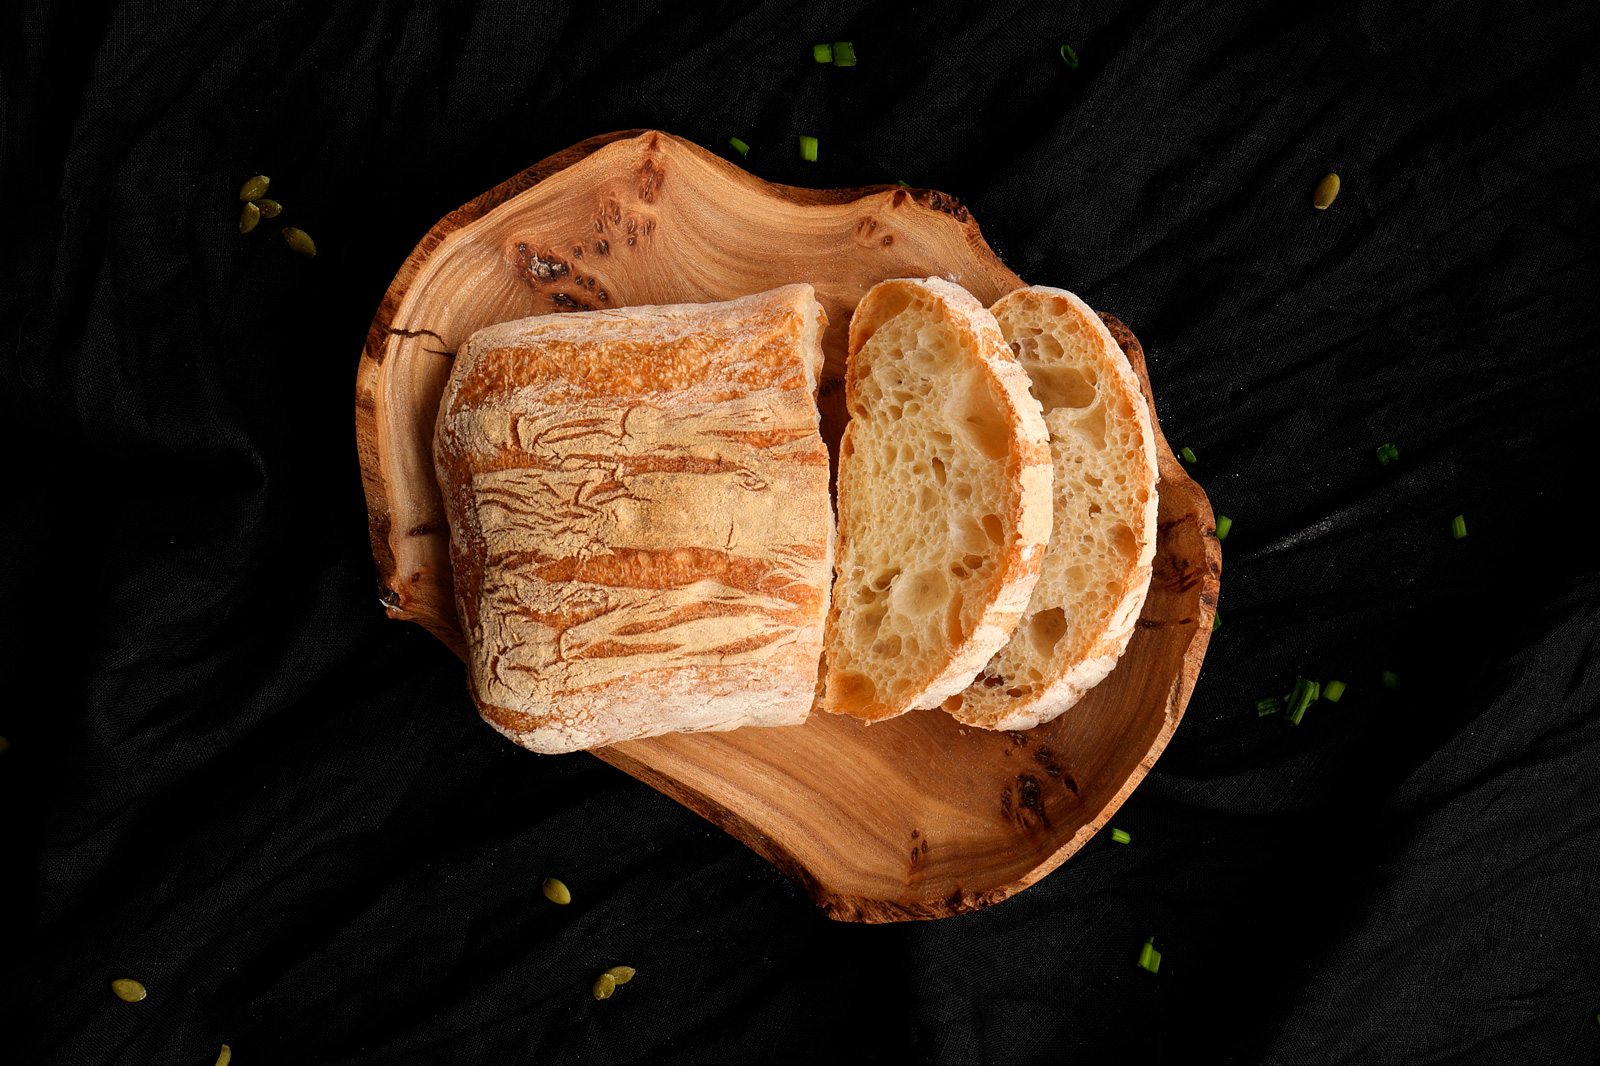 фотоссесия food photo хлеб разрезанный на деревянной тарелке